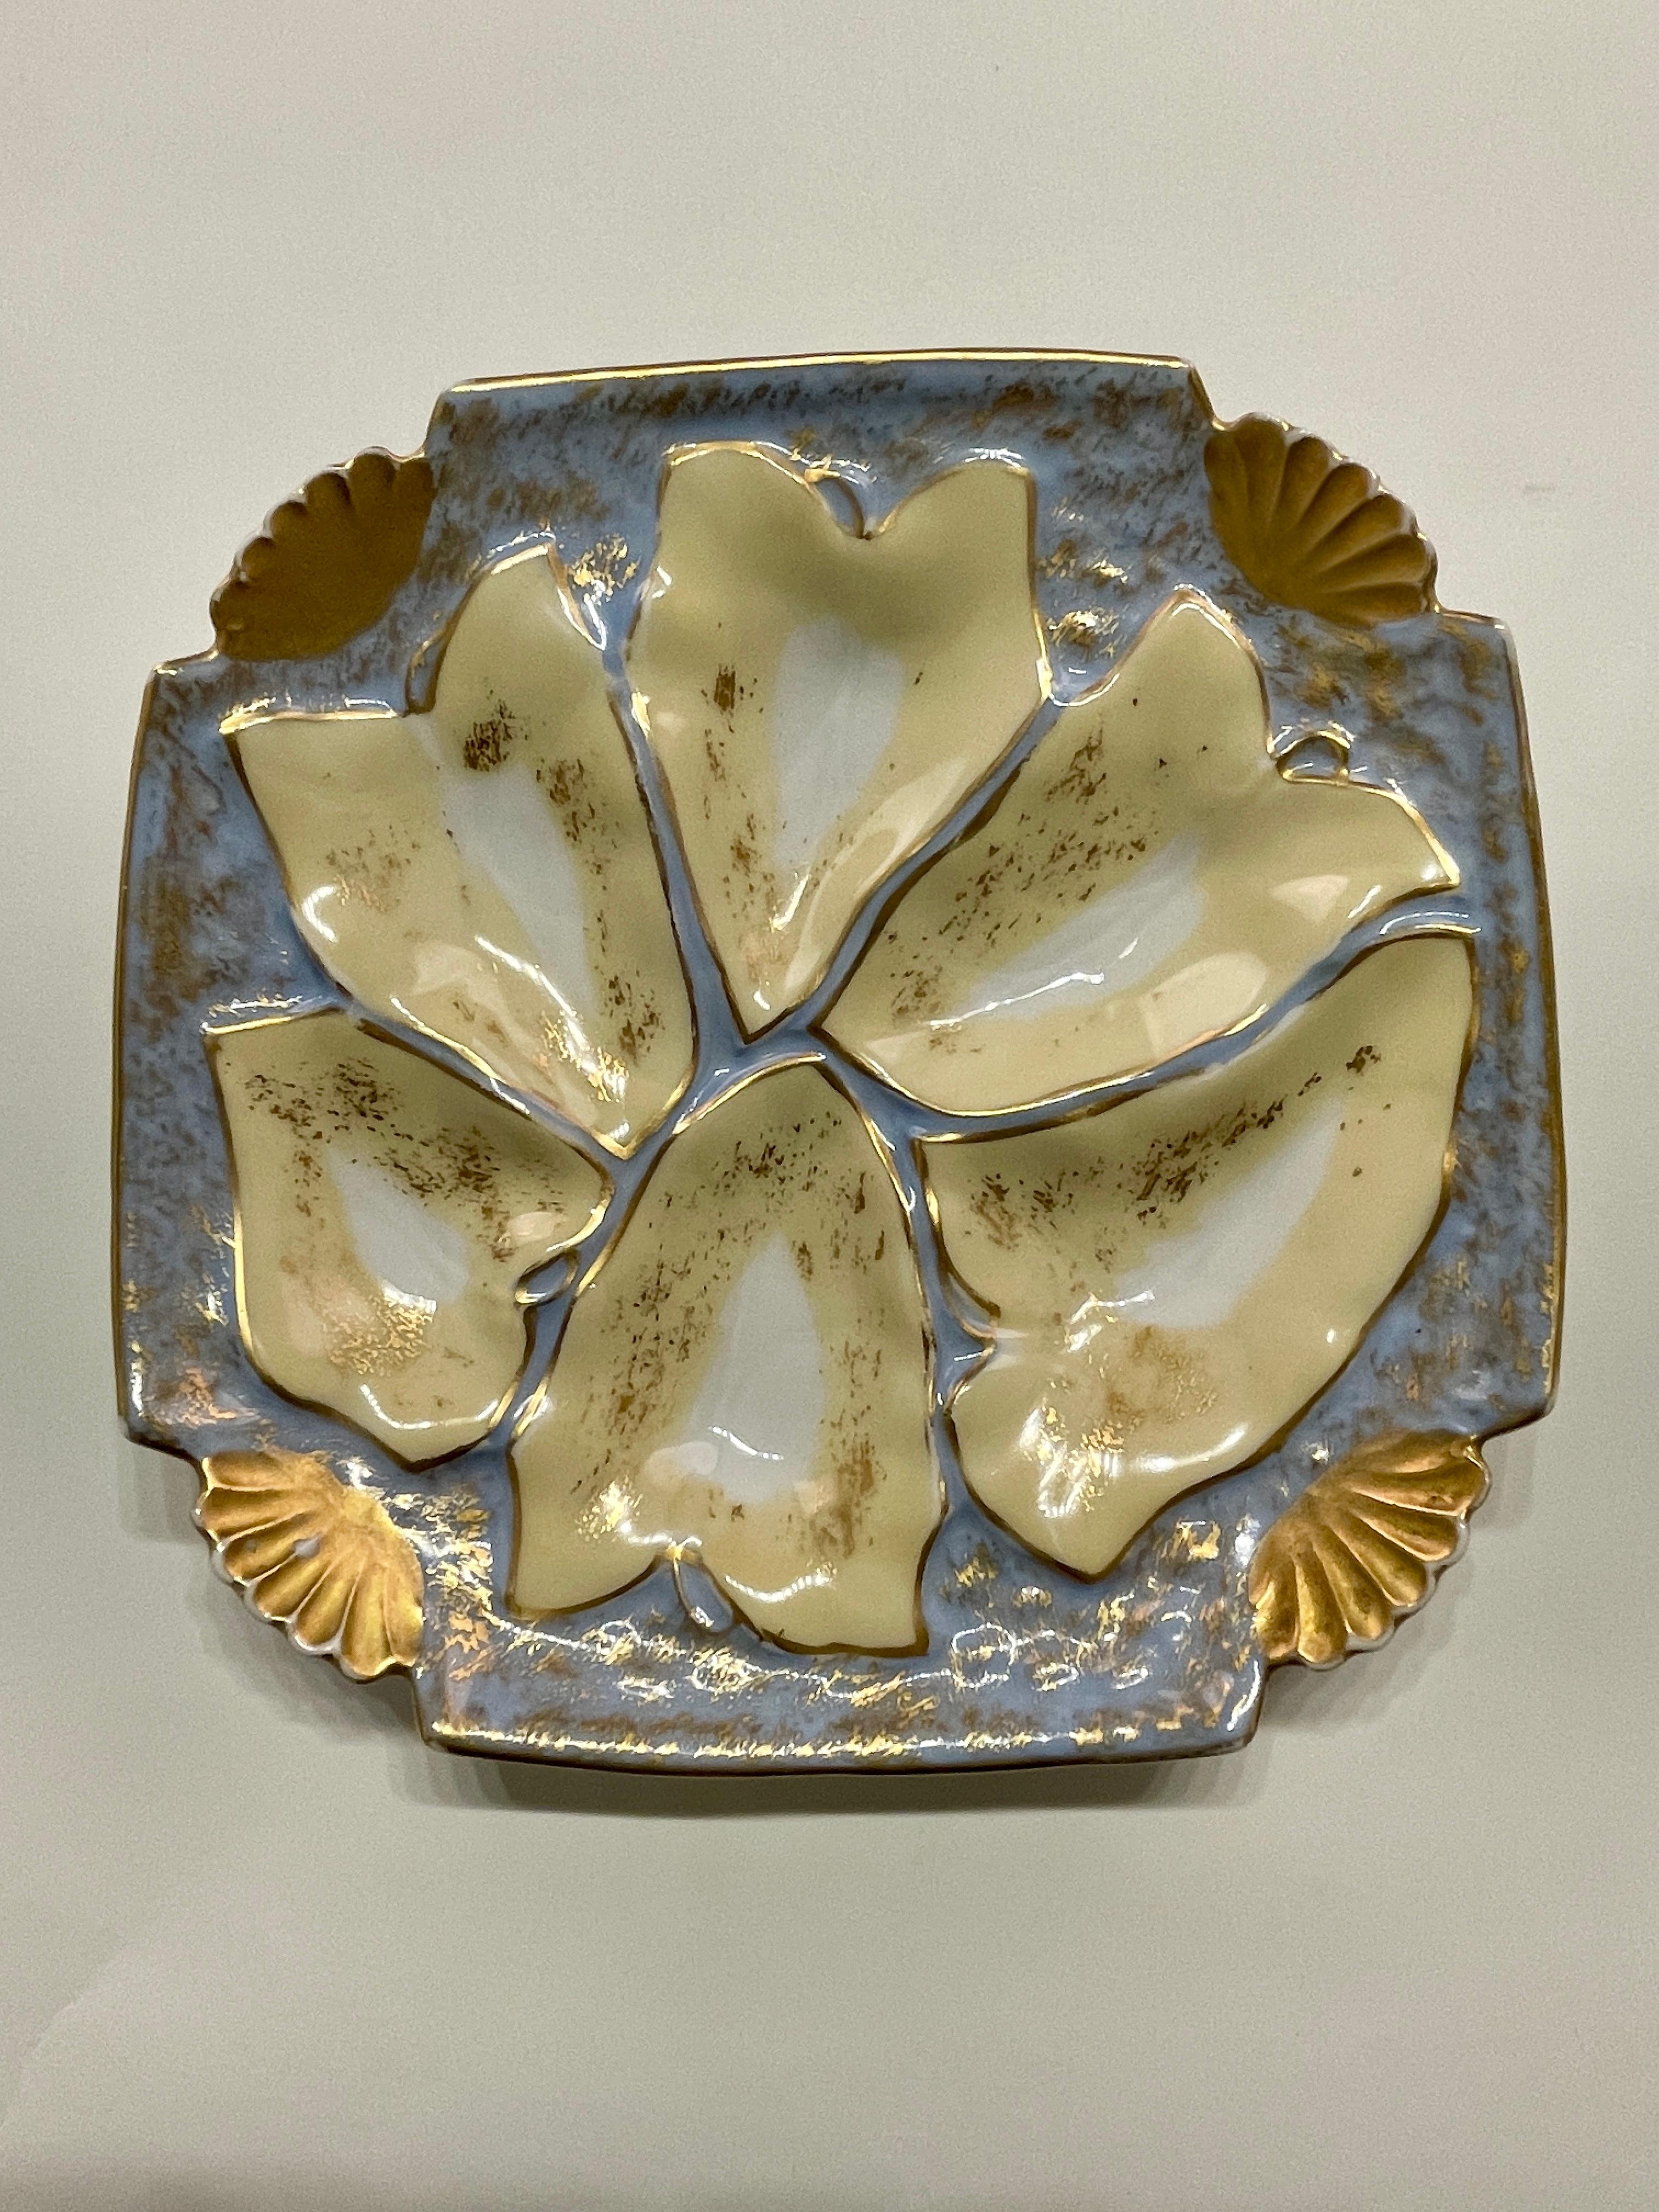 Eine gute Porzellan-Austernschale aus Limoges mit blassblauer und gelber Farbe, umgeben von Blattgold. In sehr gutem Zustand mit keine Chips noch Haaransatz festgestellt. Die Platte ist 8,25